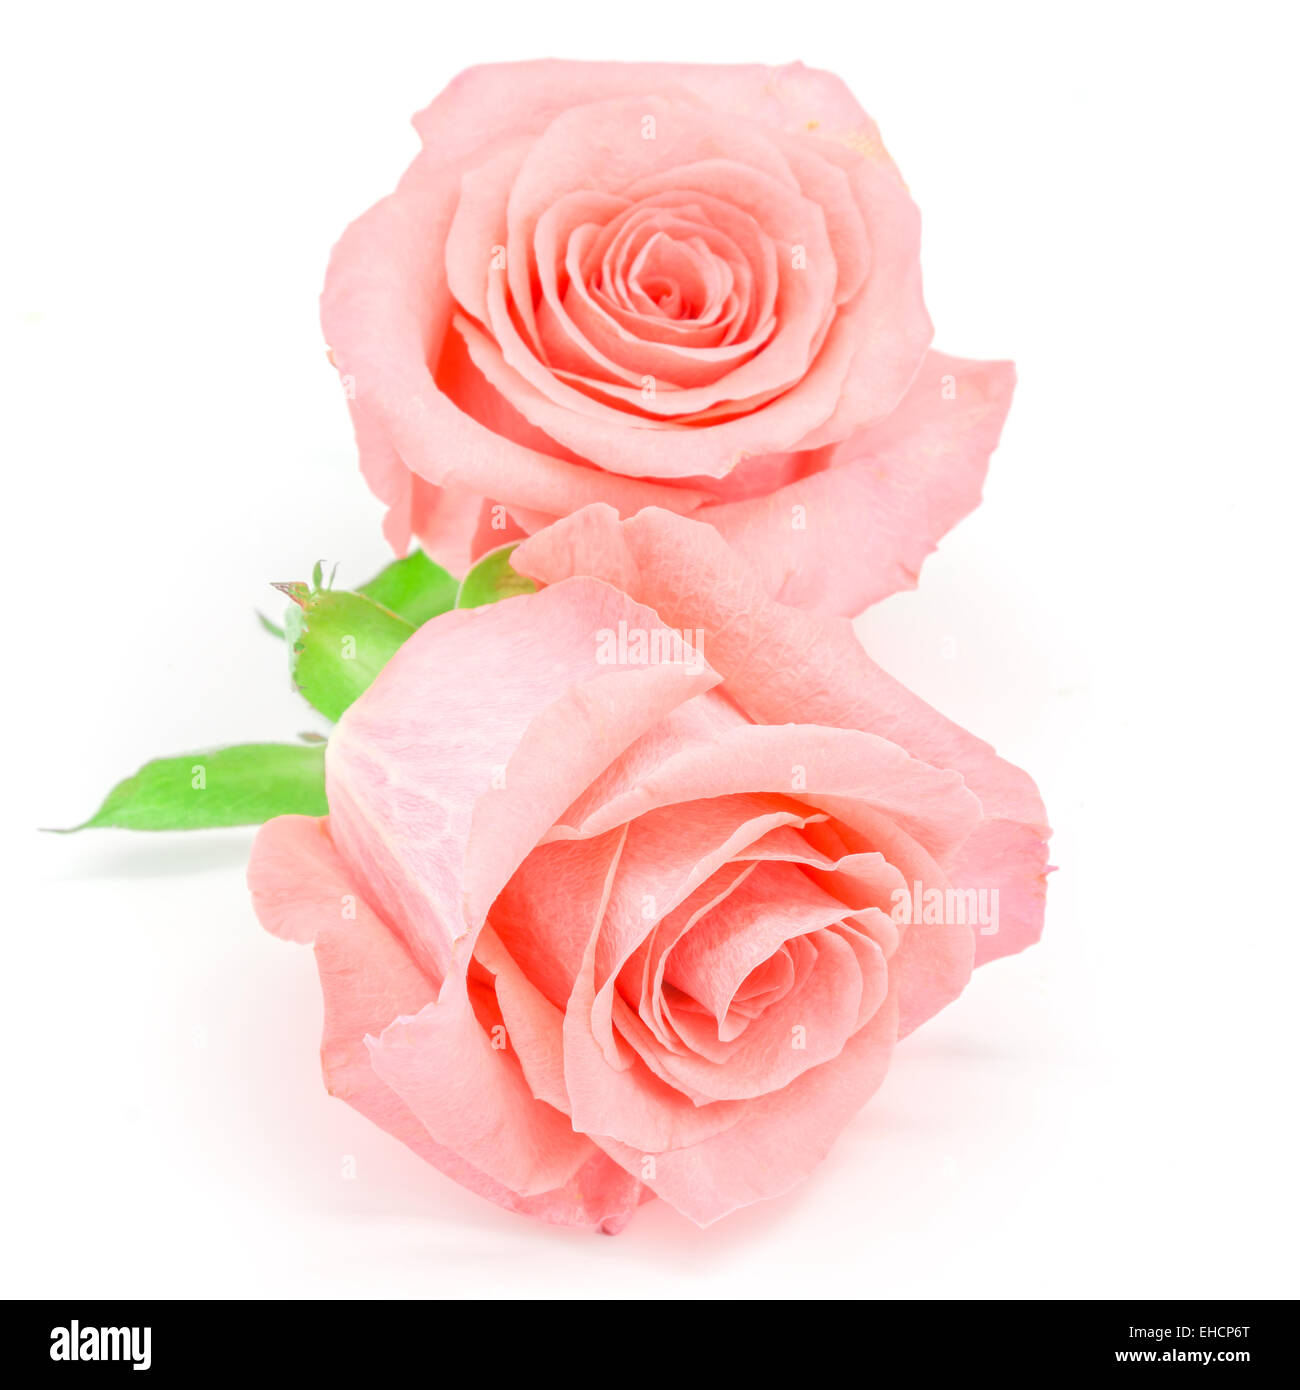 Belle fleur rose rose pâle, isolé sur fond blanc Banque D'Images